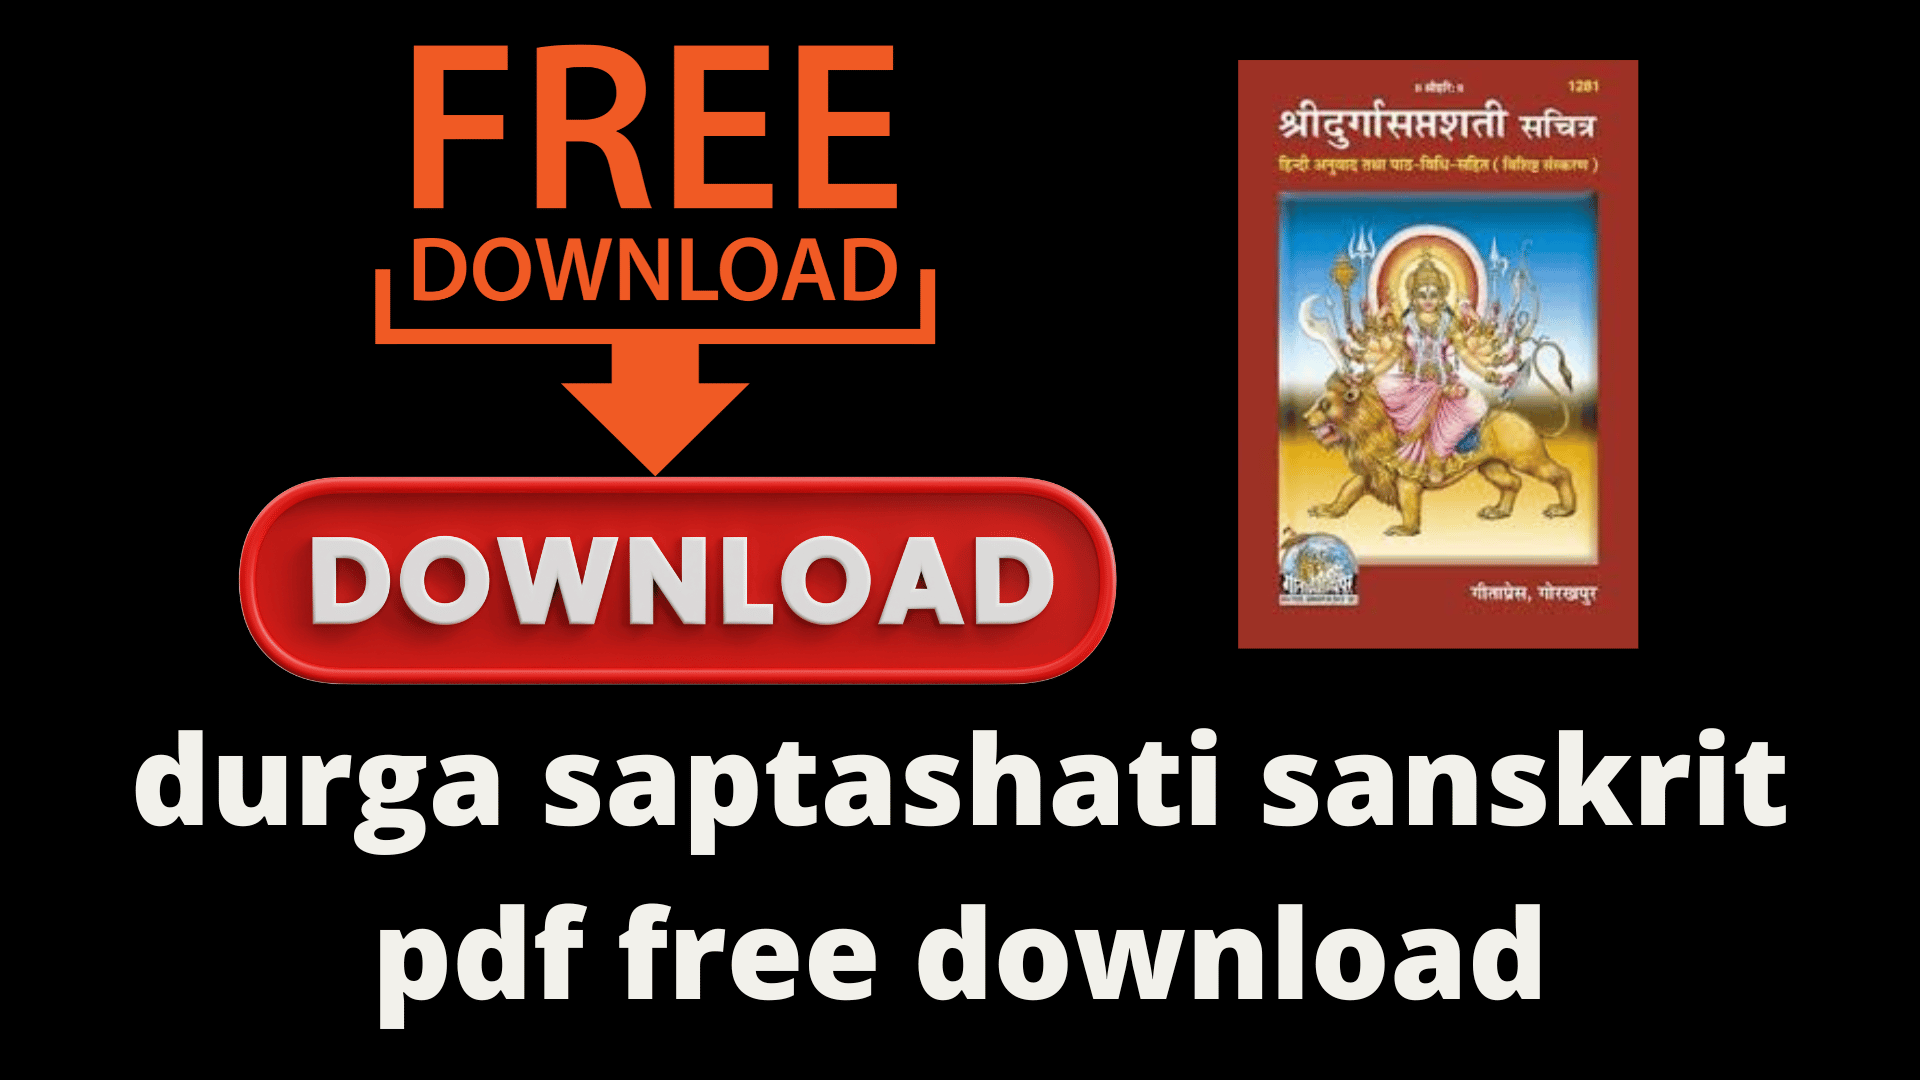 durga saptashati sanskrit pdf free download